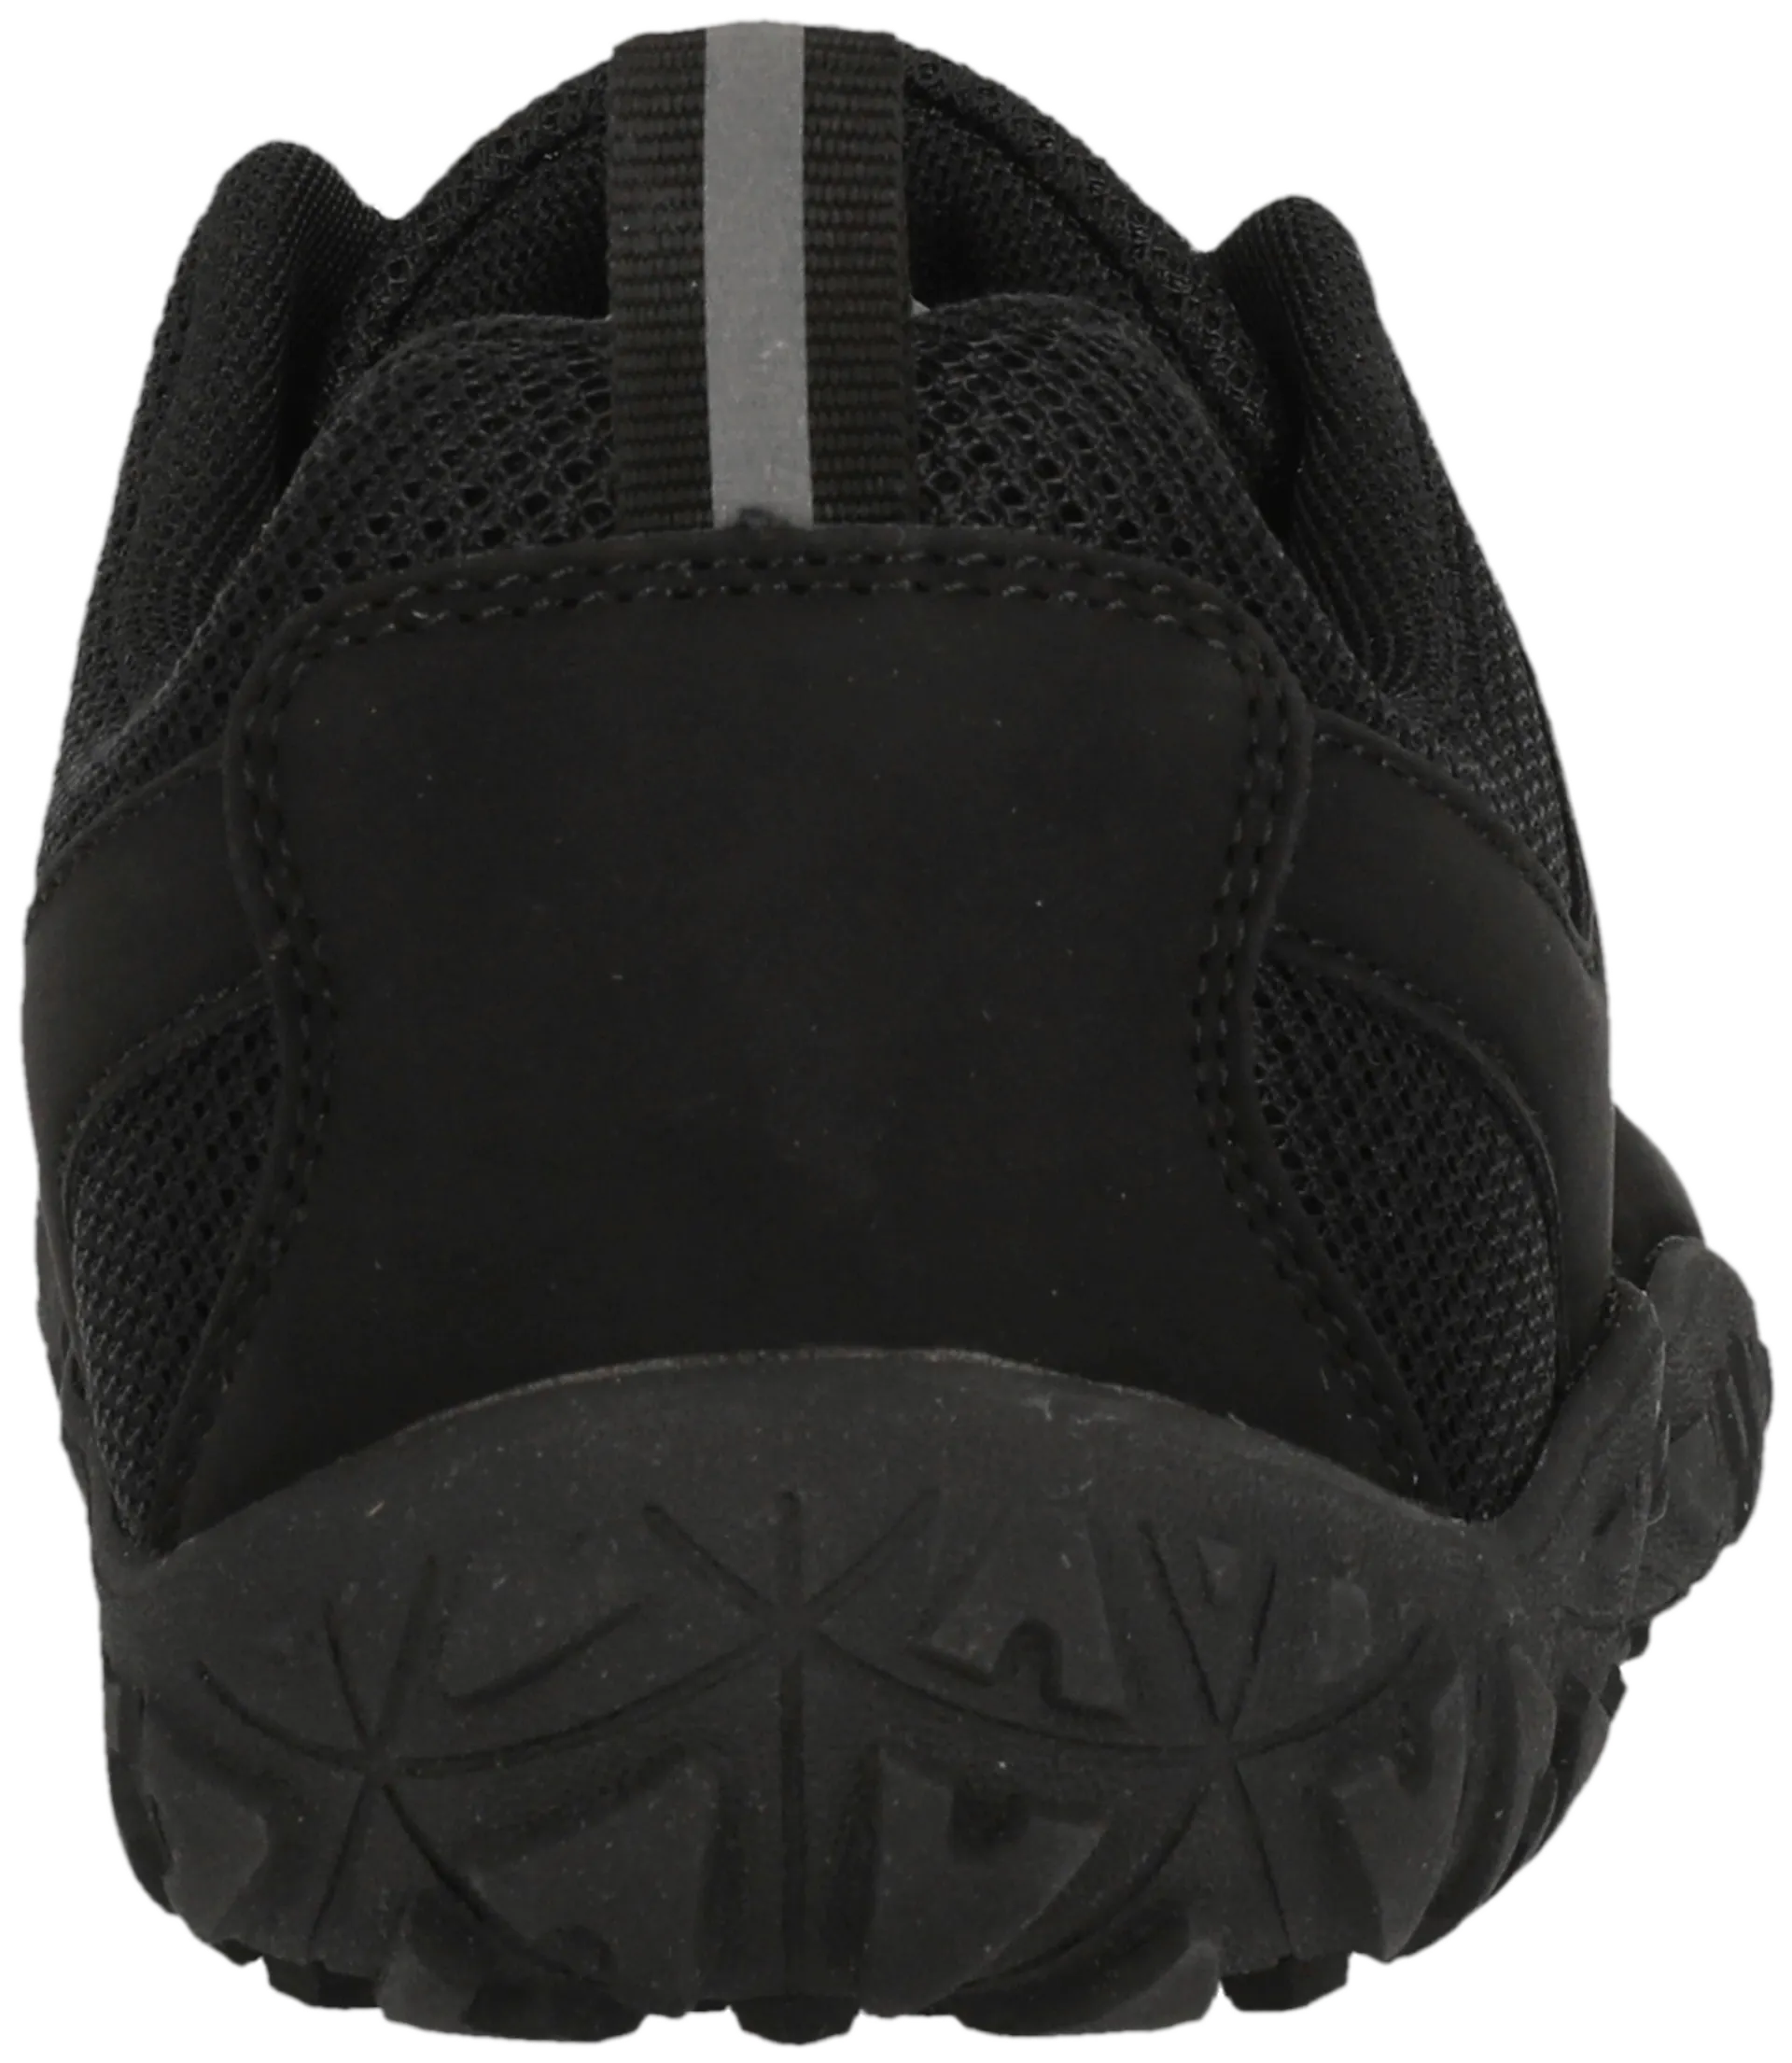 Endurance paljasjalkakenkä Kendy Barefoot Shoe unisex - 1001S Black Solid - 6